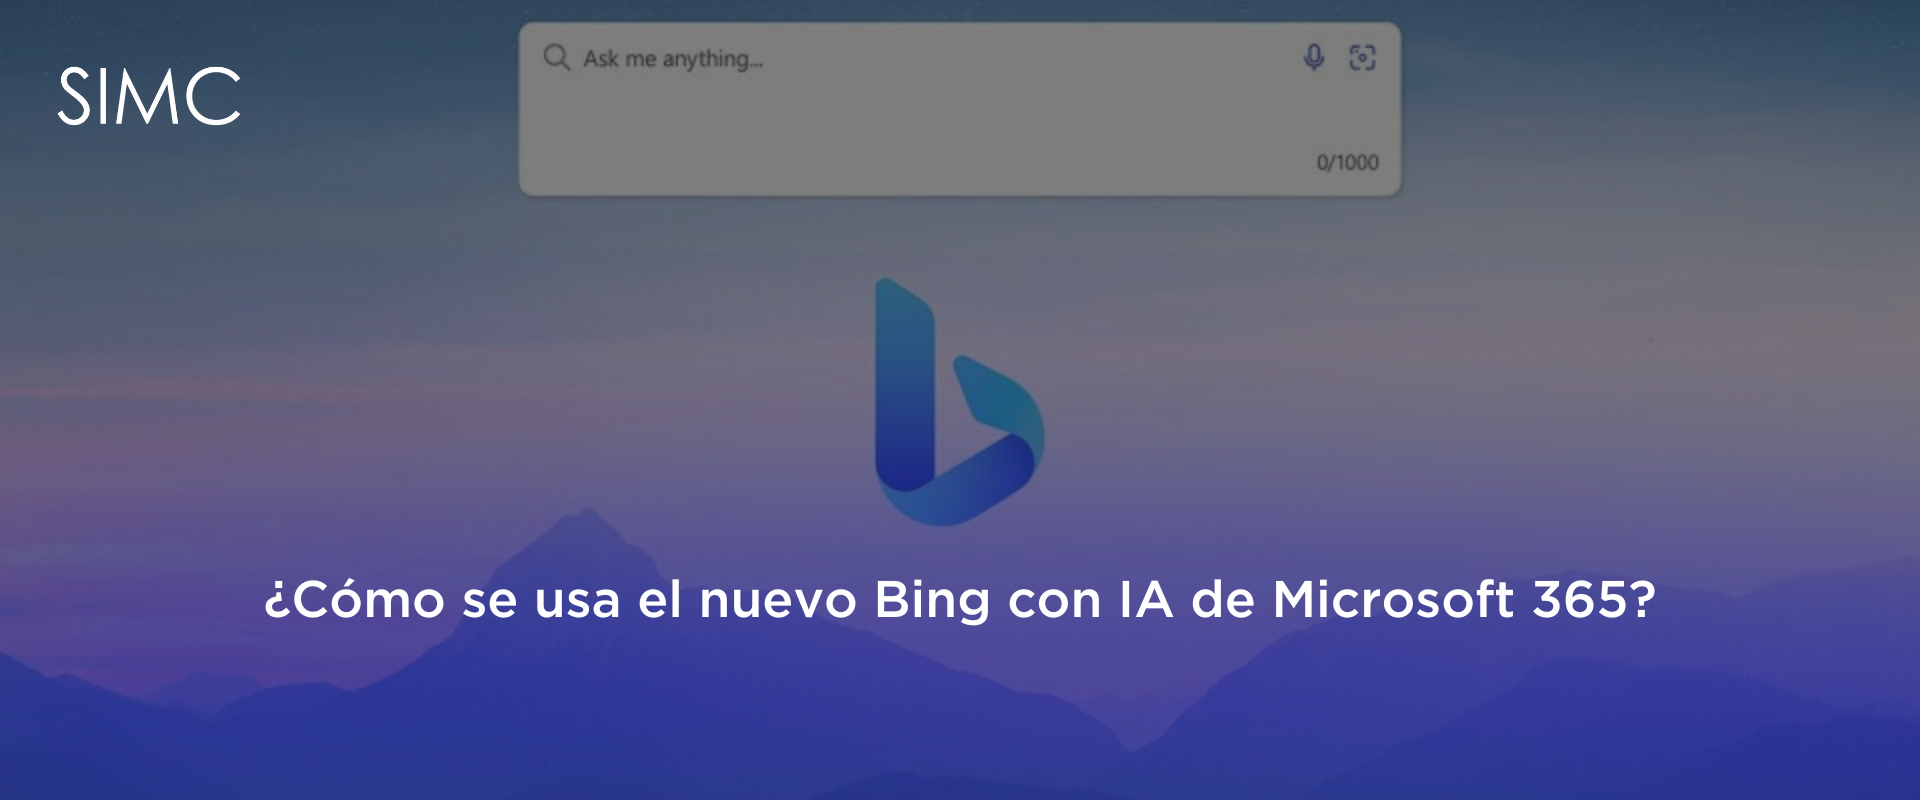 El nuevo Bing de Microsoft 365